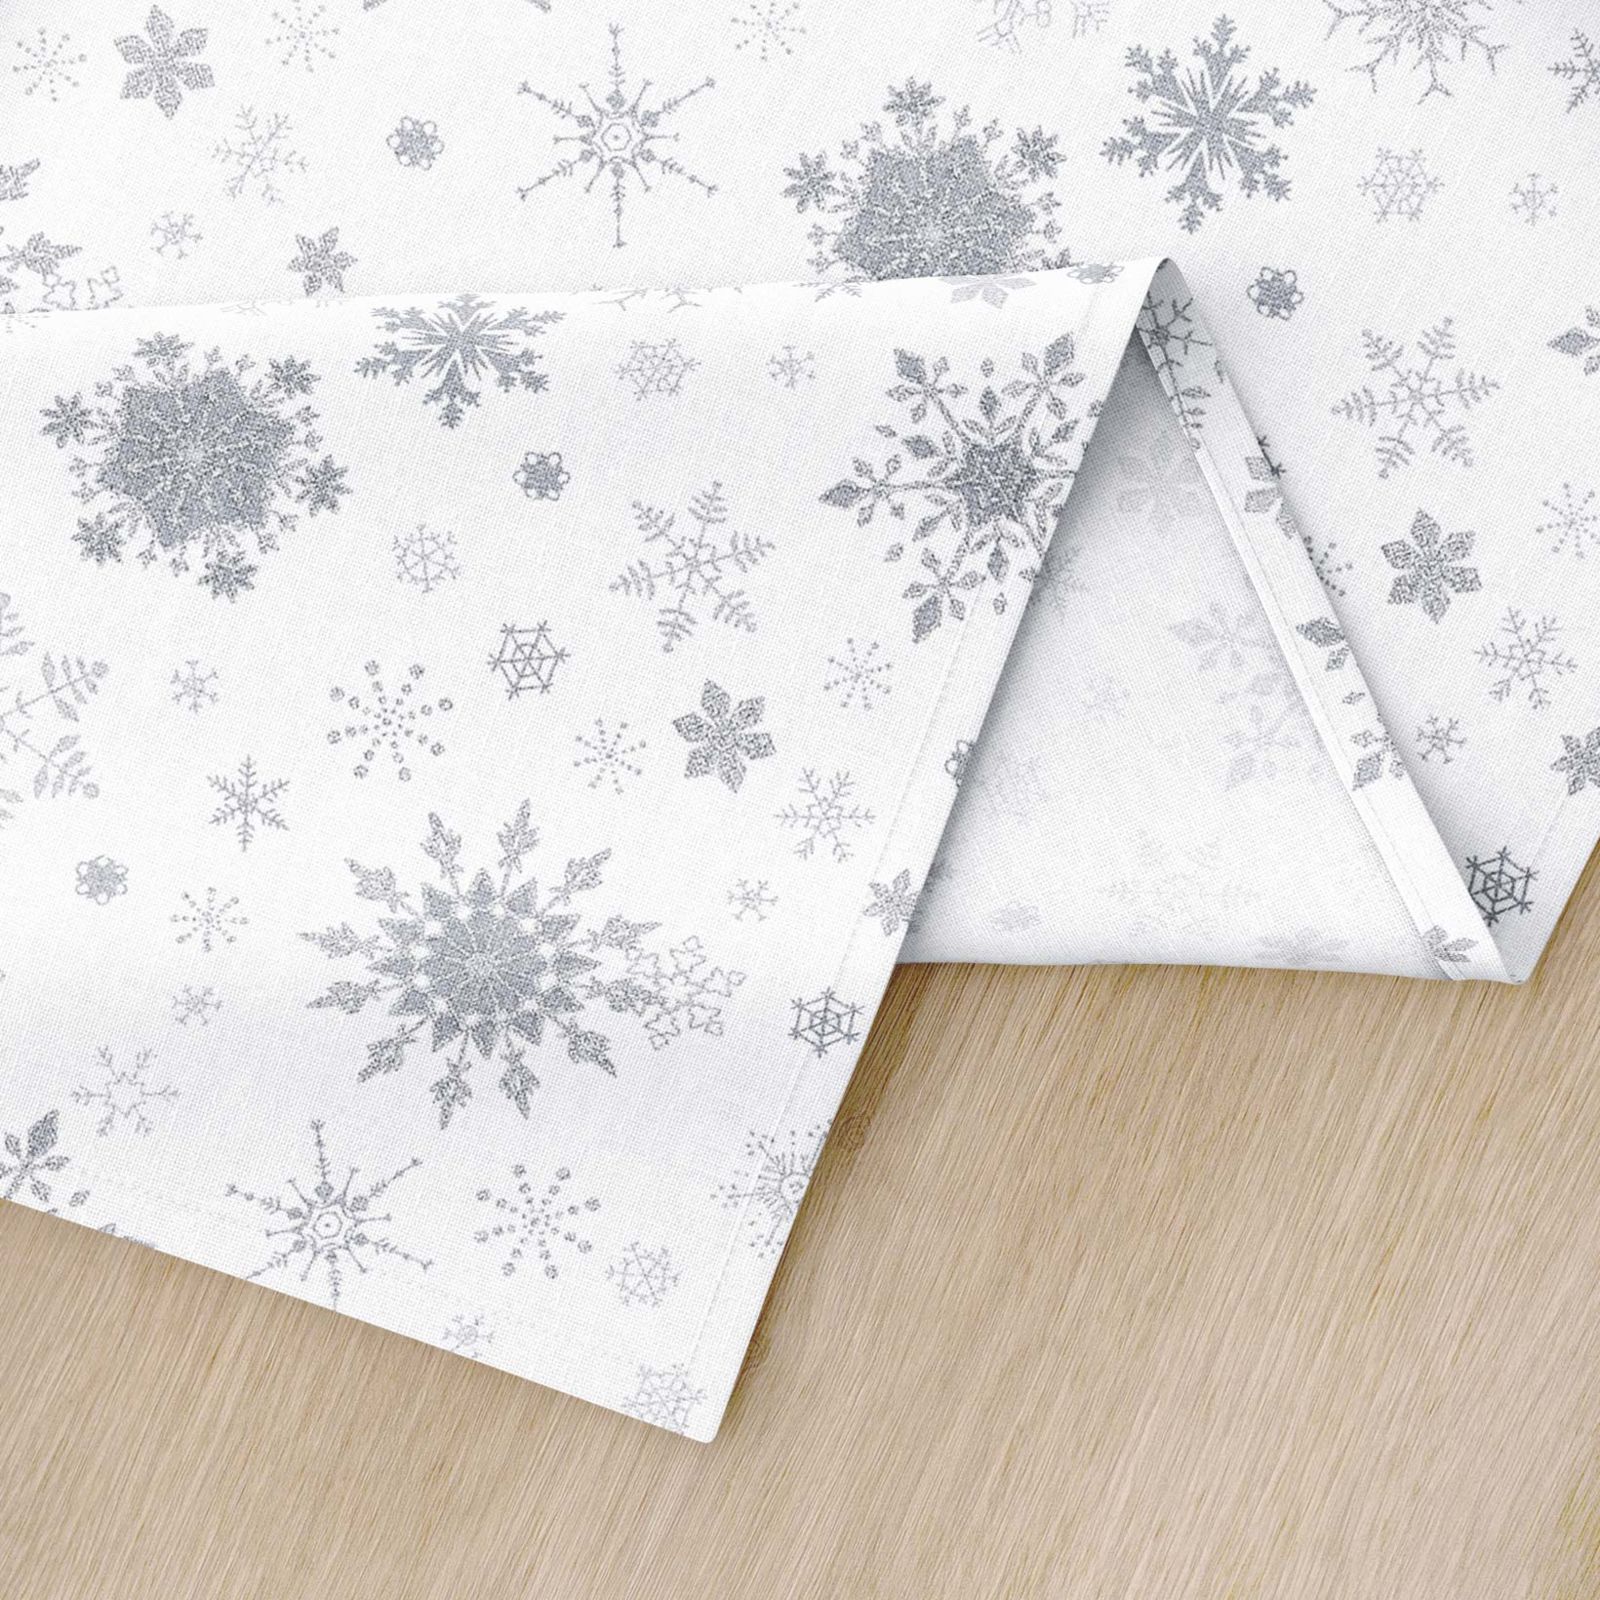 Podkładka na stół świąteczna z płótna bawełnianego - srebrne śnieżynki na białym - 2szt.